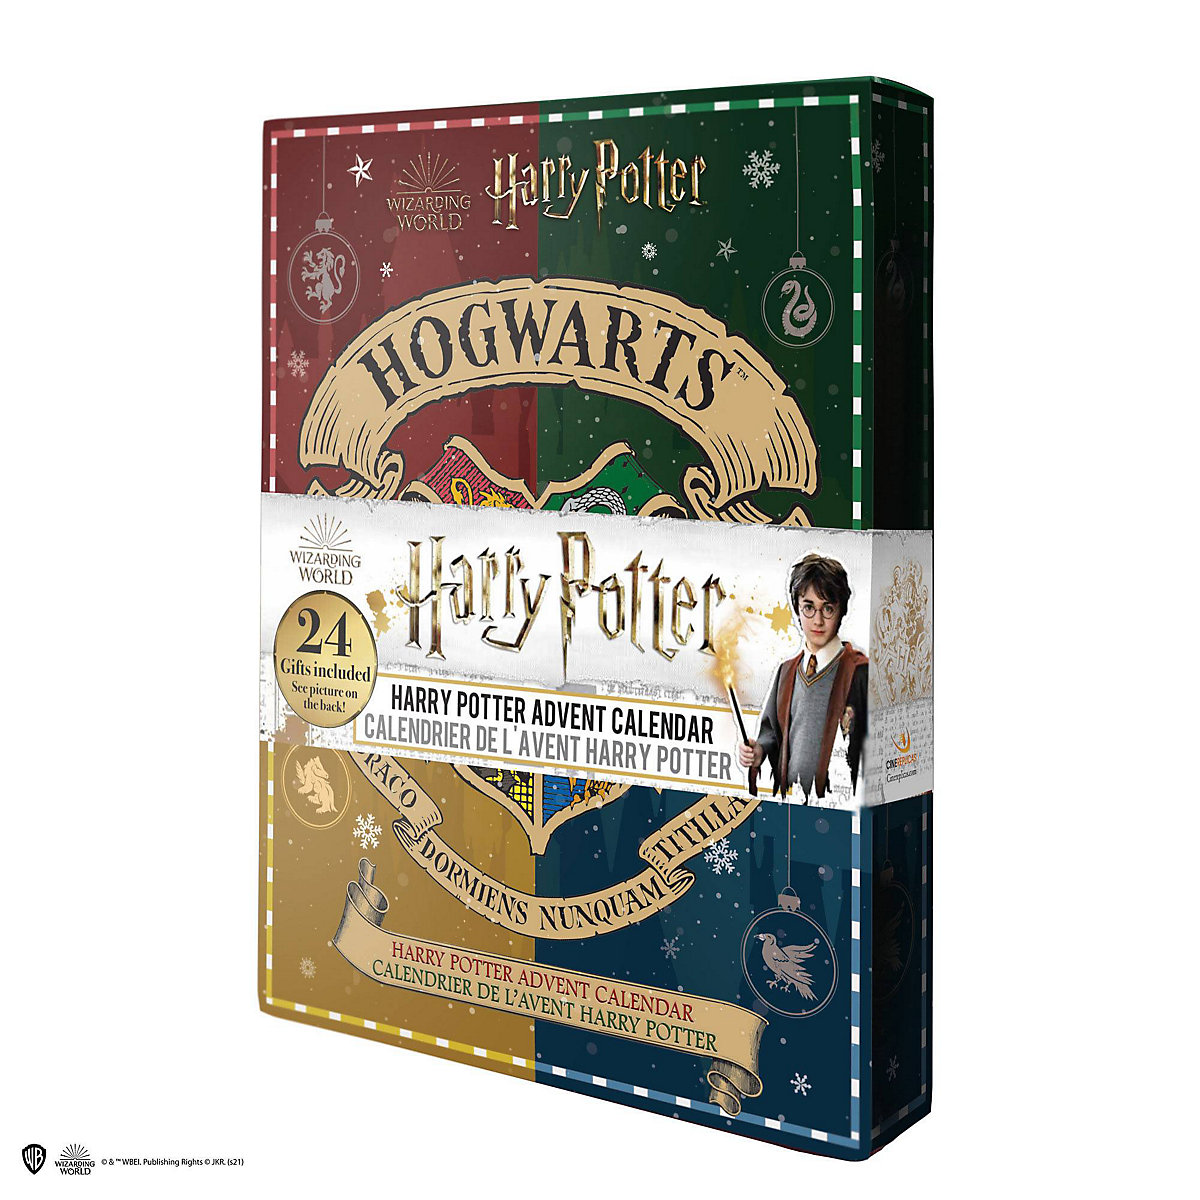 CINEREPLICAS Harry Potter Adventskalender Hogwarts